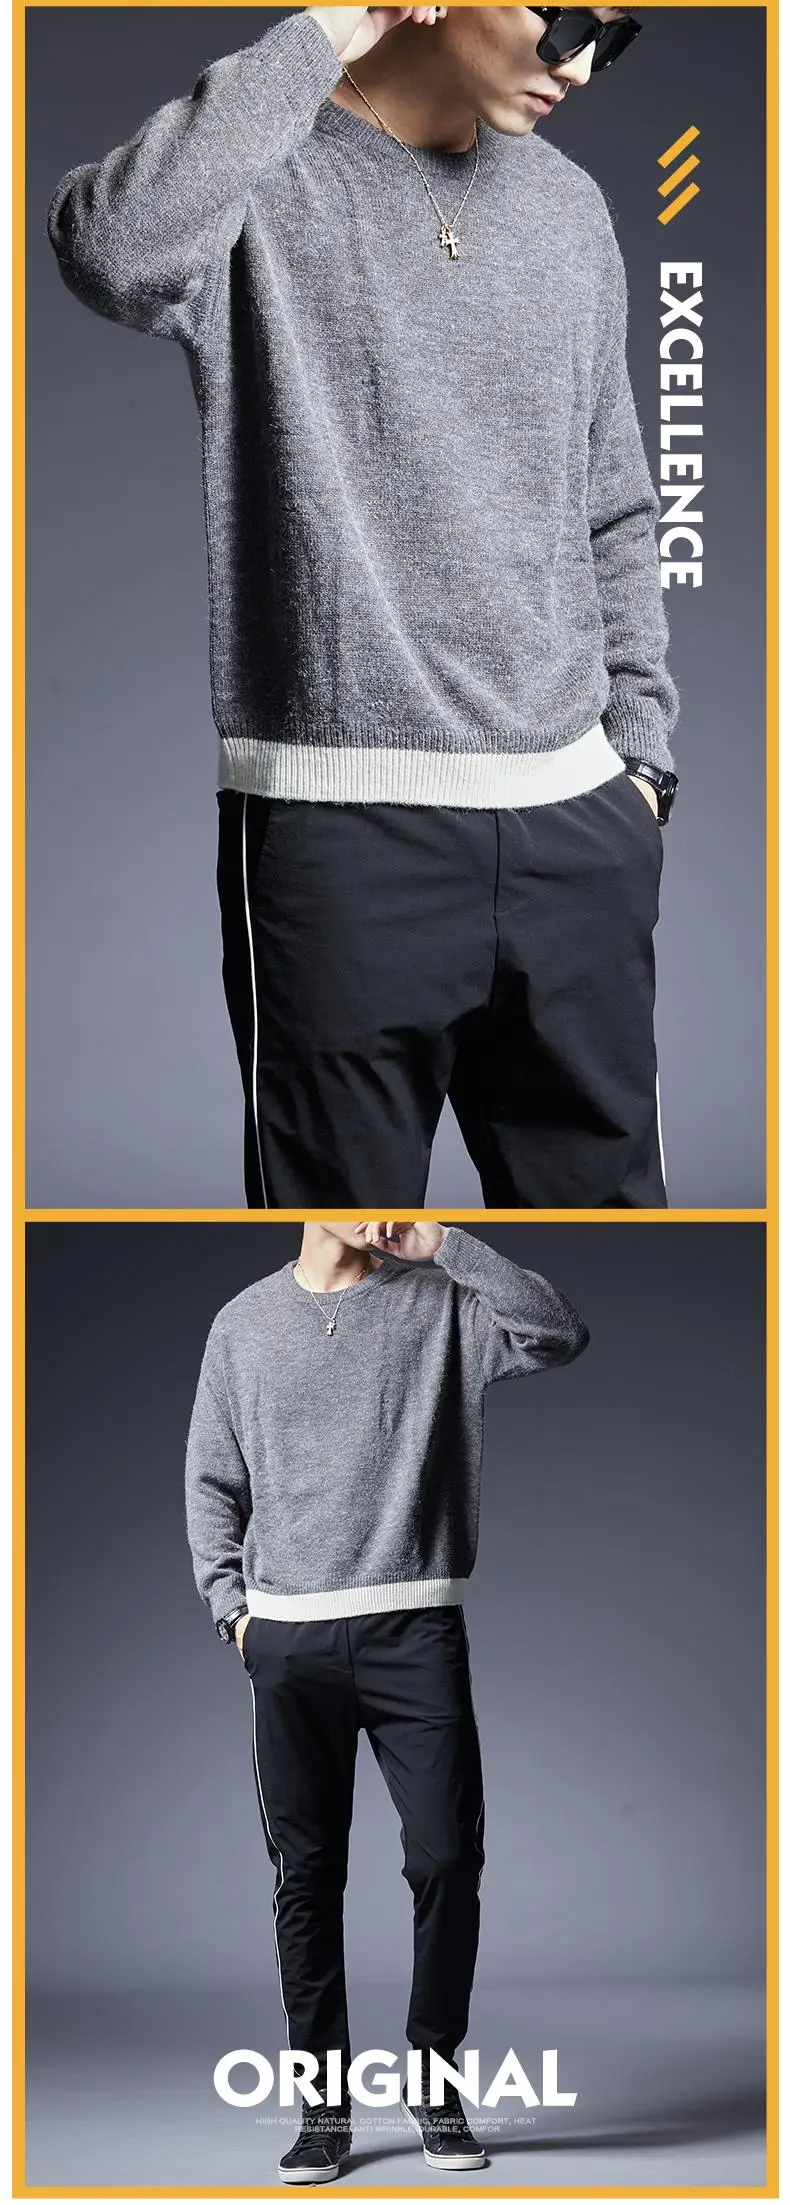 Модный брендовый свитер для мужчин s пуловер сплошной цвет облегающий джемпер вязаный теплый зимний Корейский стиль повседневная мужская одежда